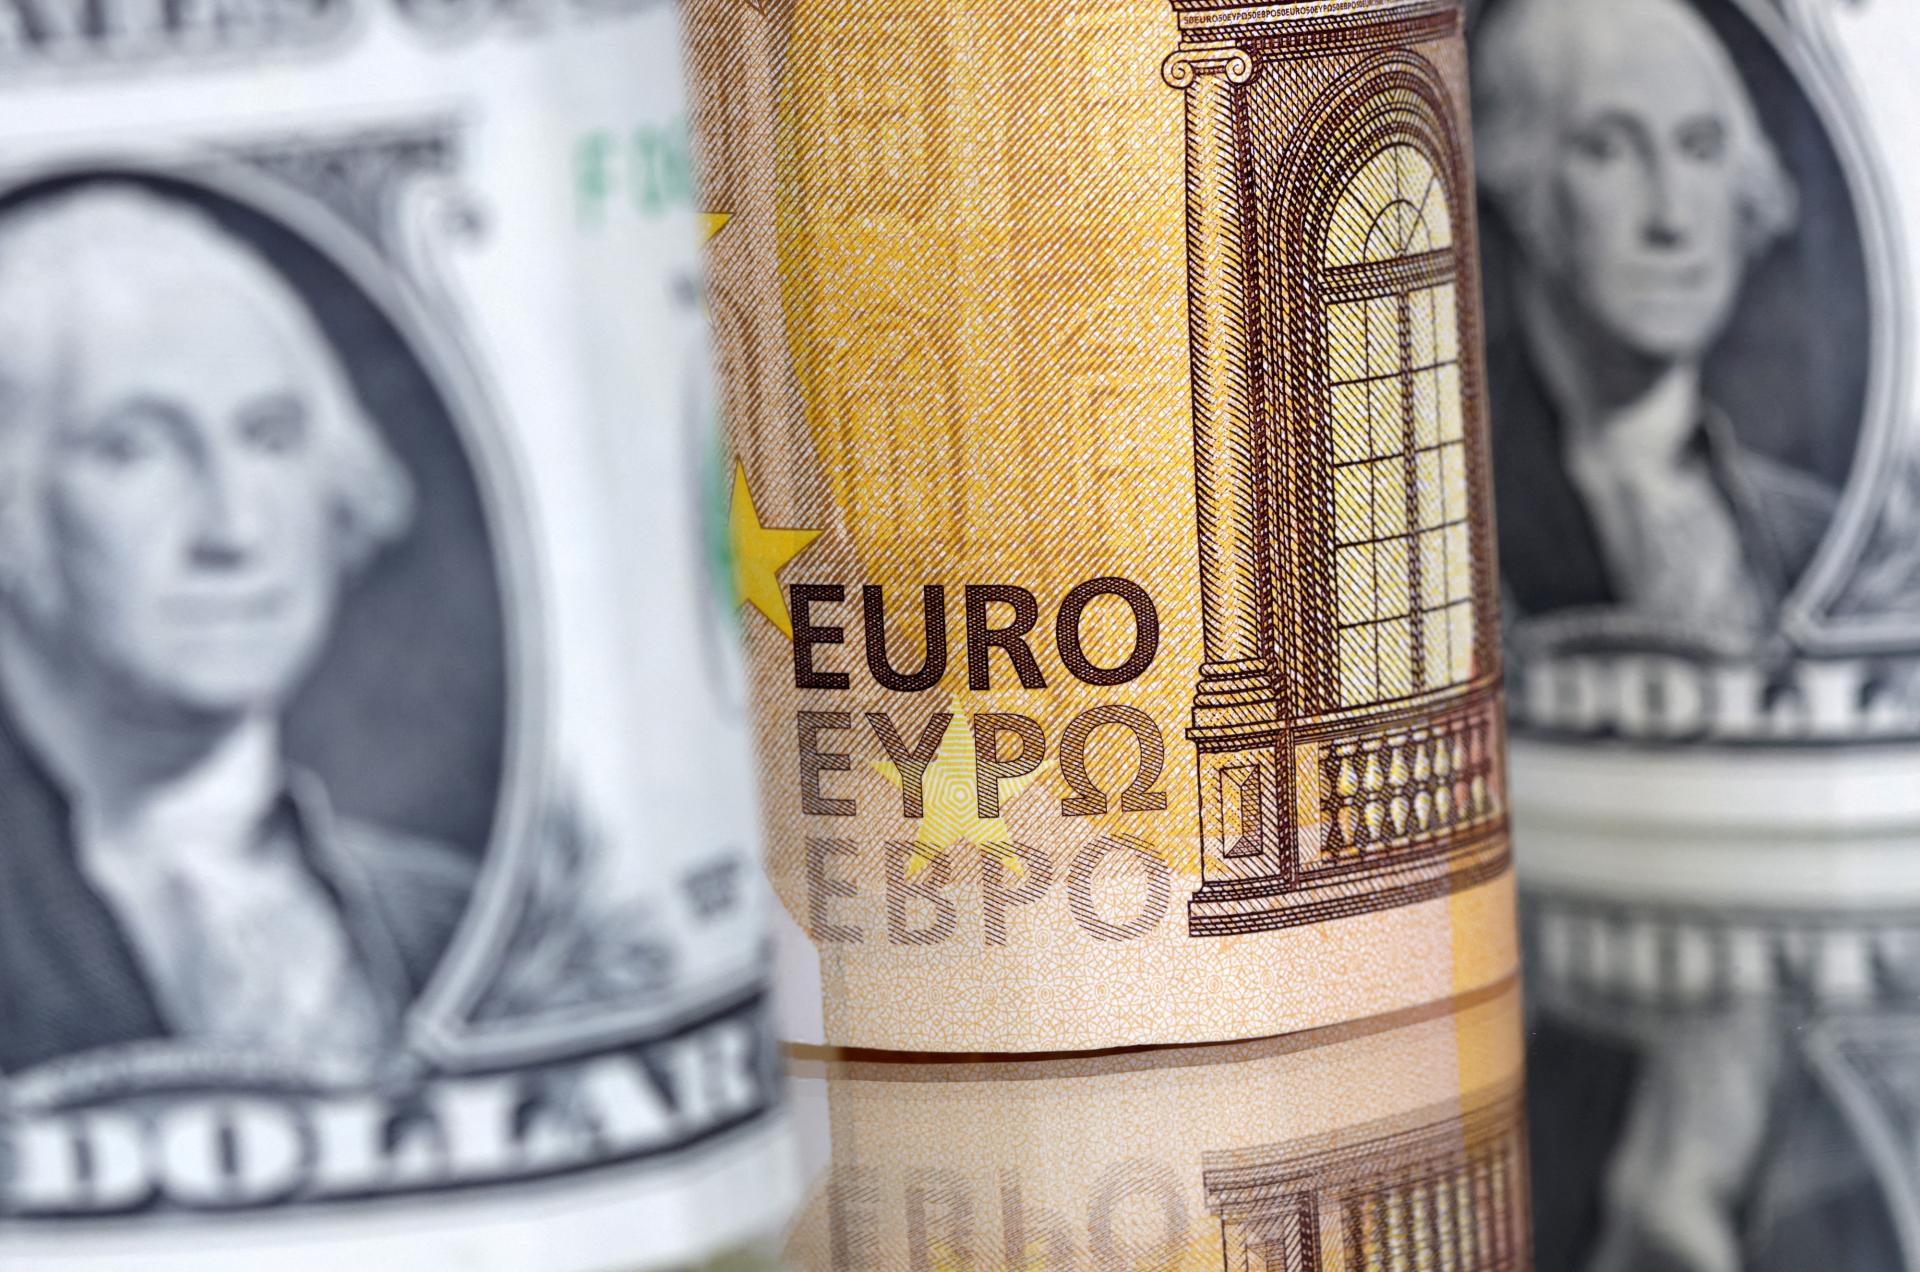 Euro v piatok oslabilo, dôvodom je posilnenie dolára